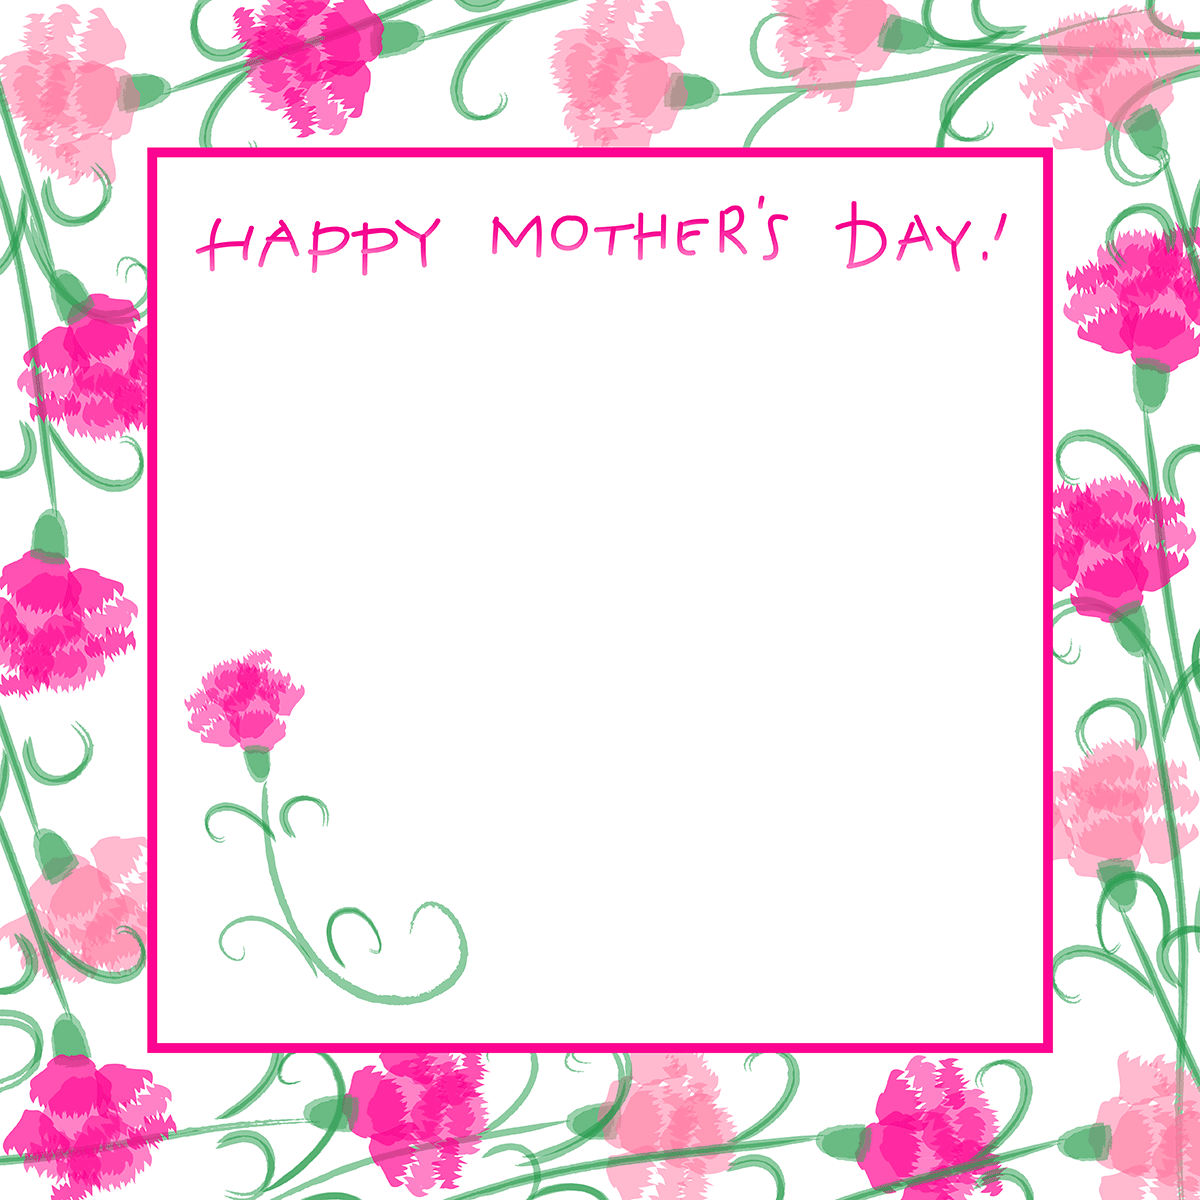 Pink framed carnation card for Mother's Day.